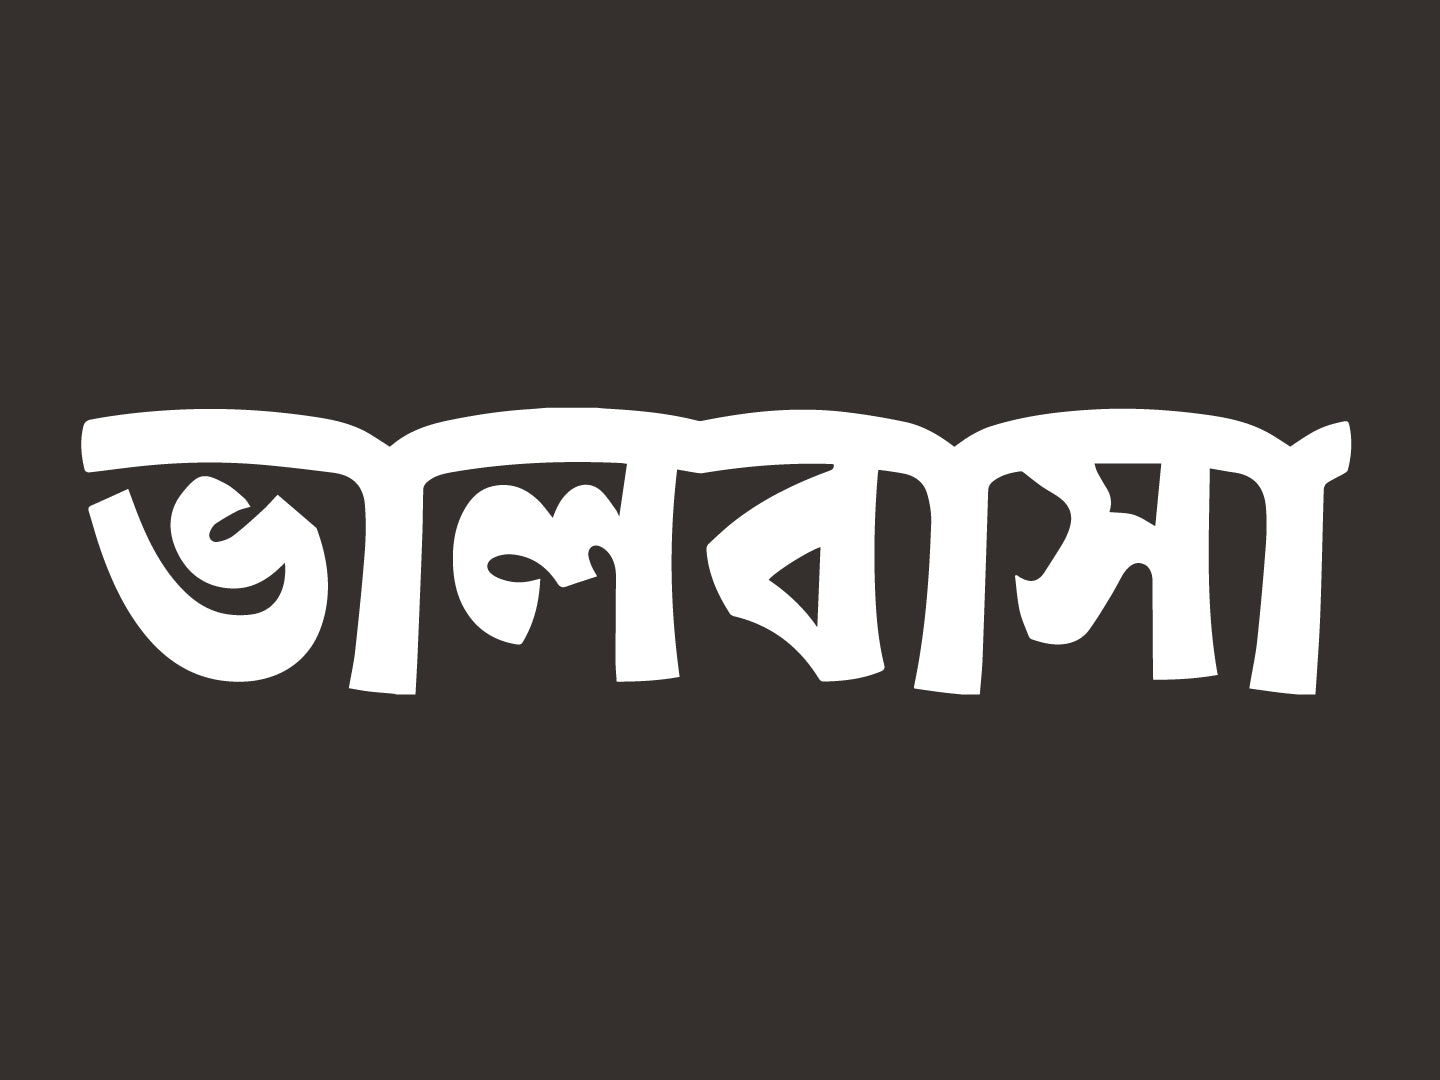 Bengali/Bangla